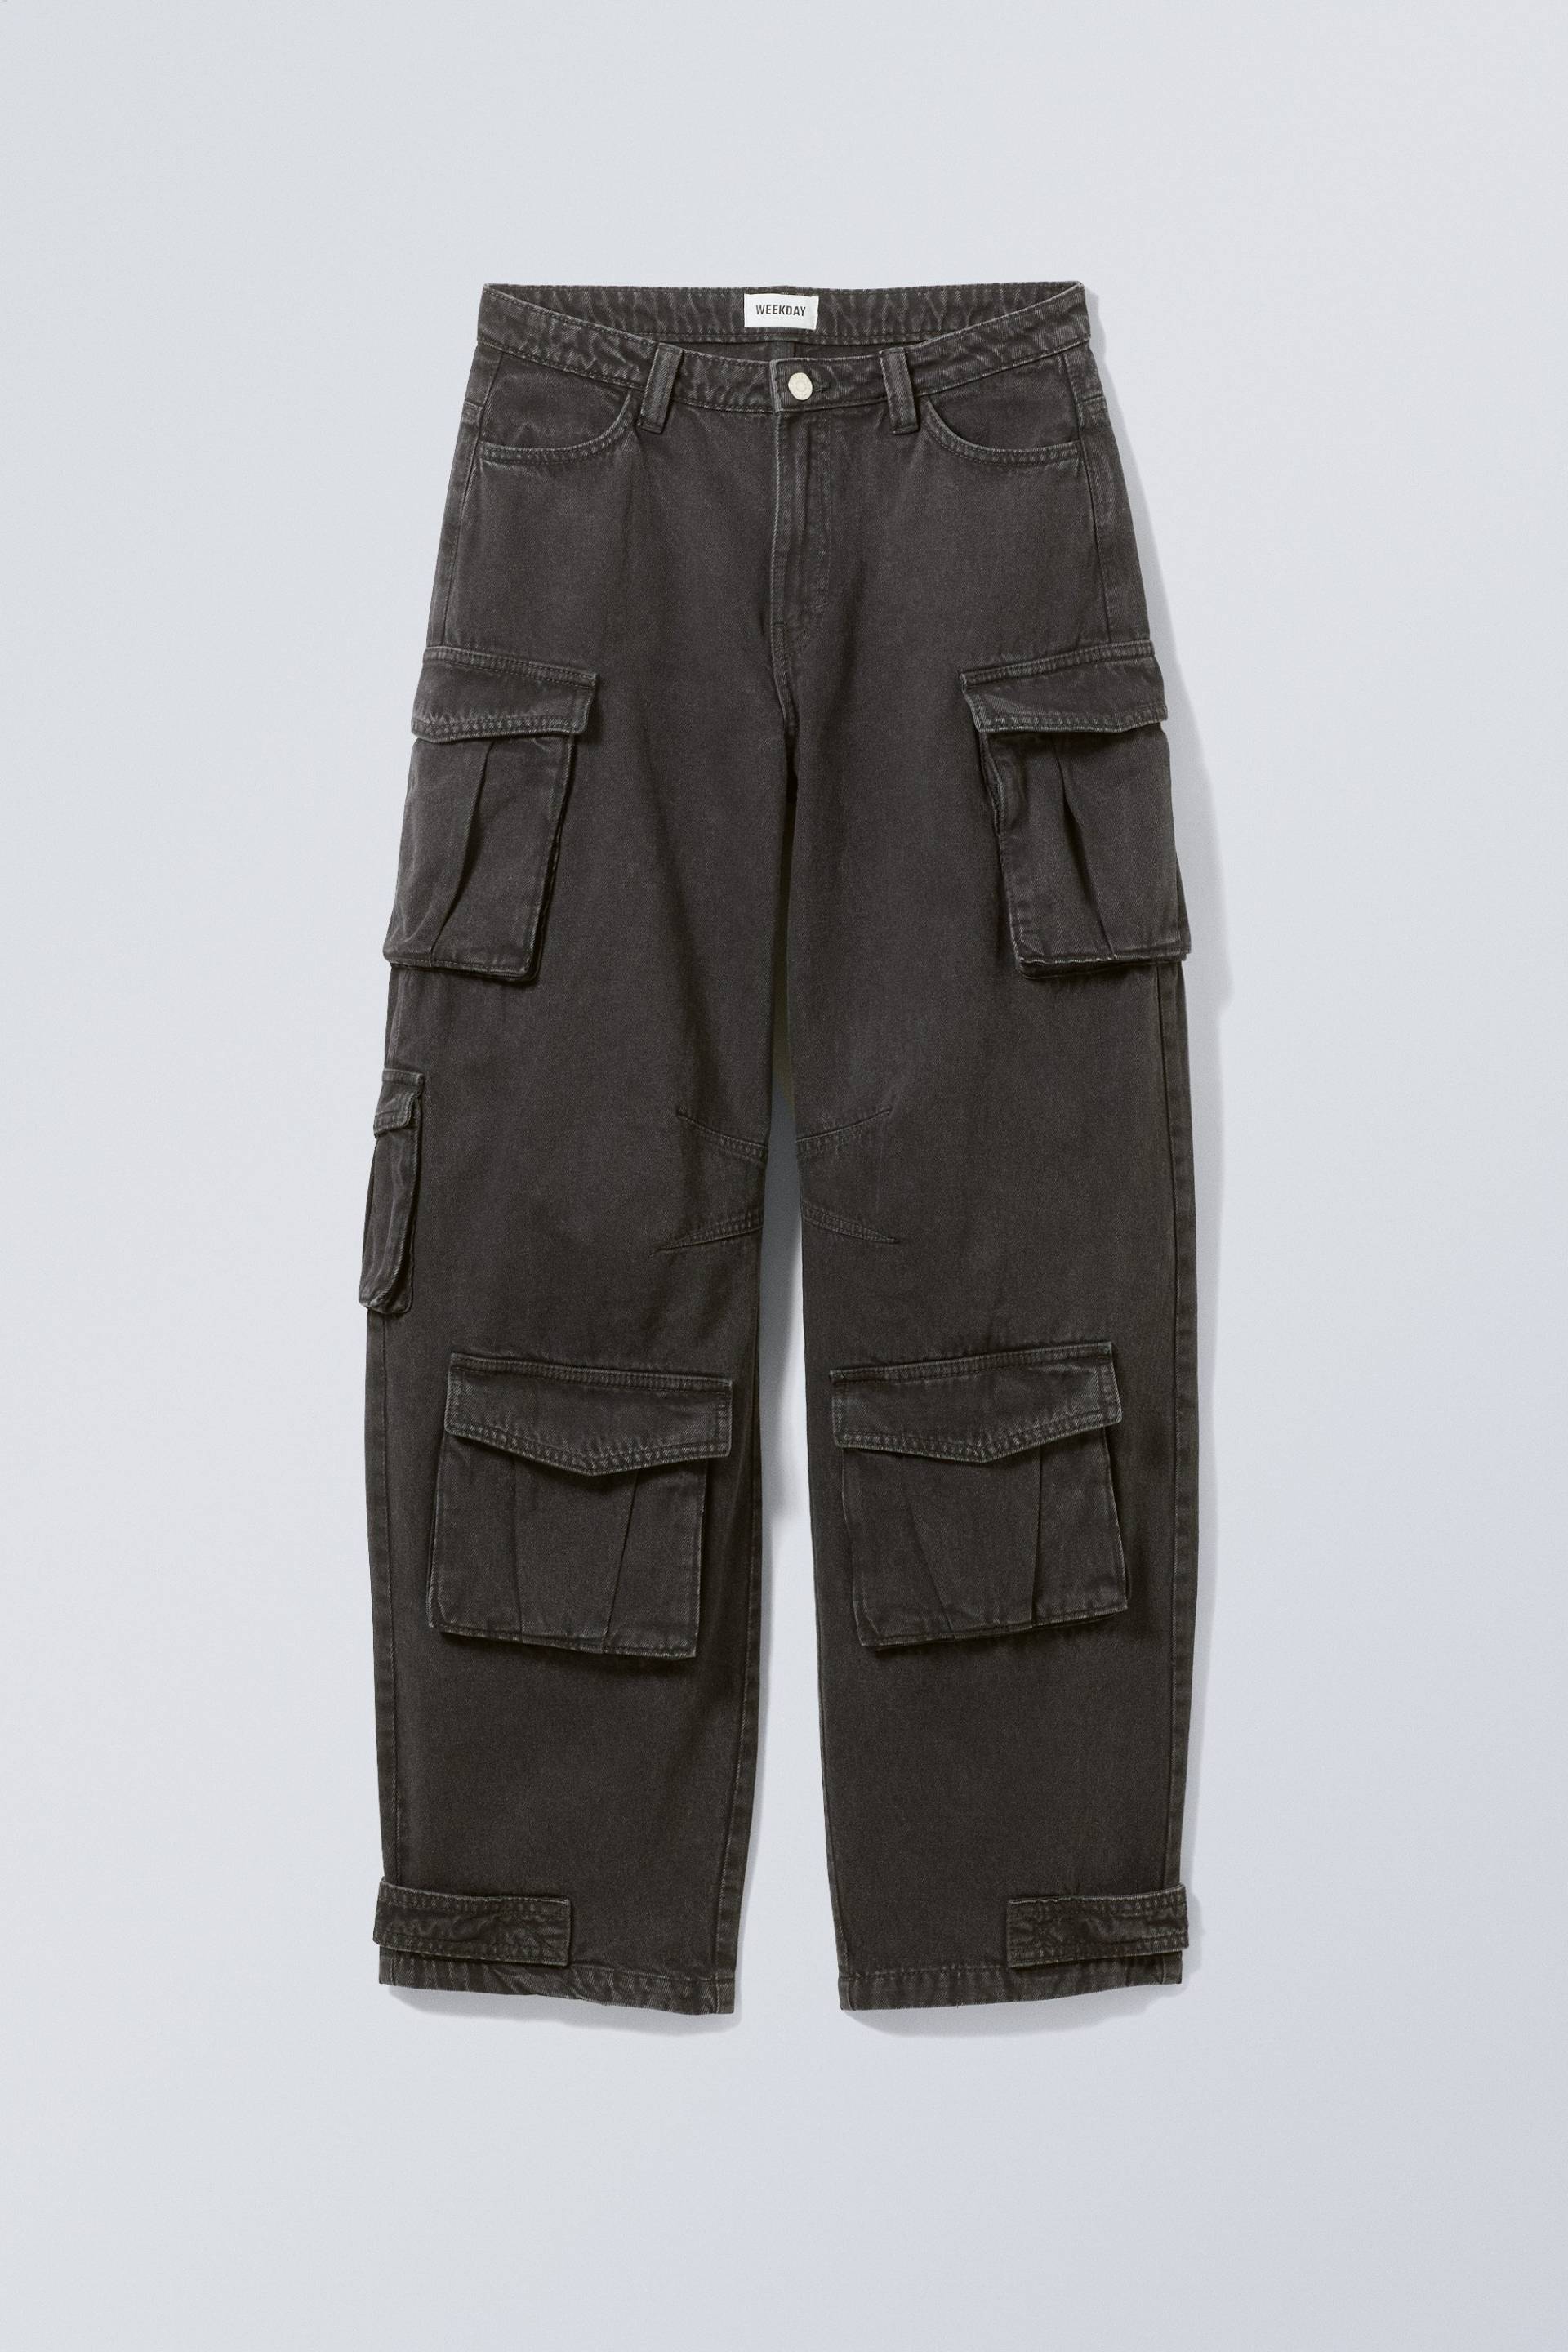 Weekday Workwear-Hose Shilou Dunkelgrau/Washed, Gepäck in Größe 34. Farbe: Dark grey wash von Weekday